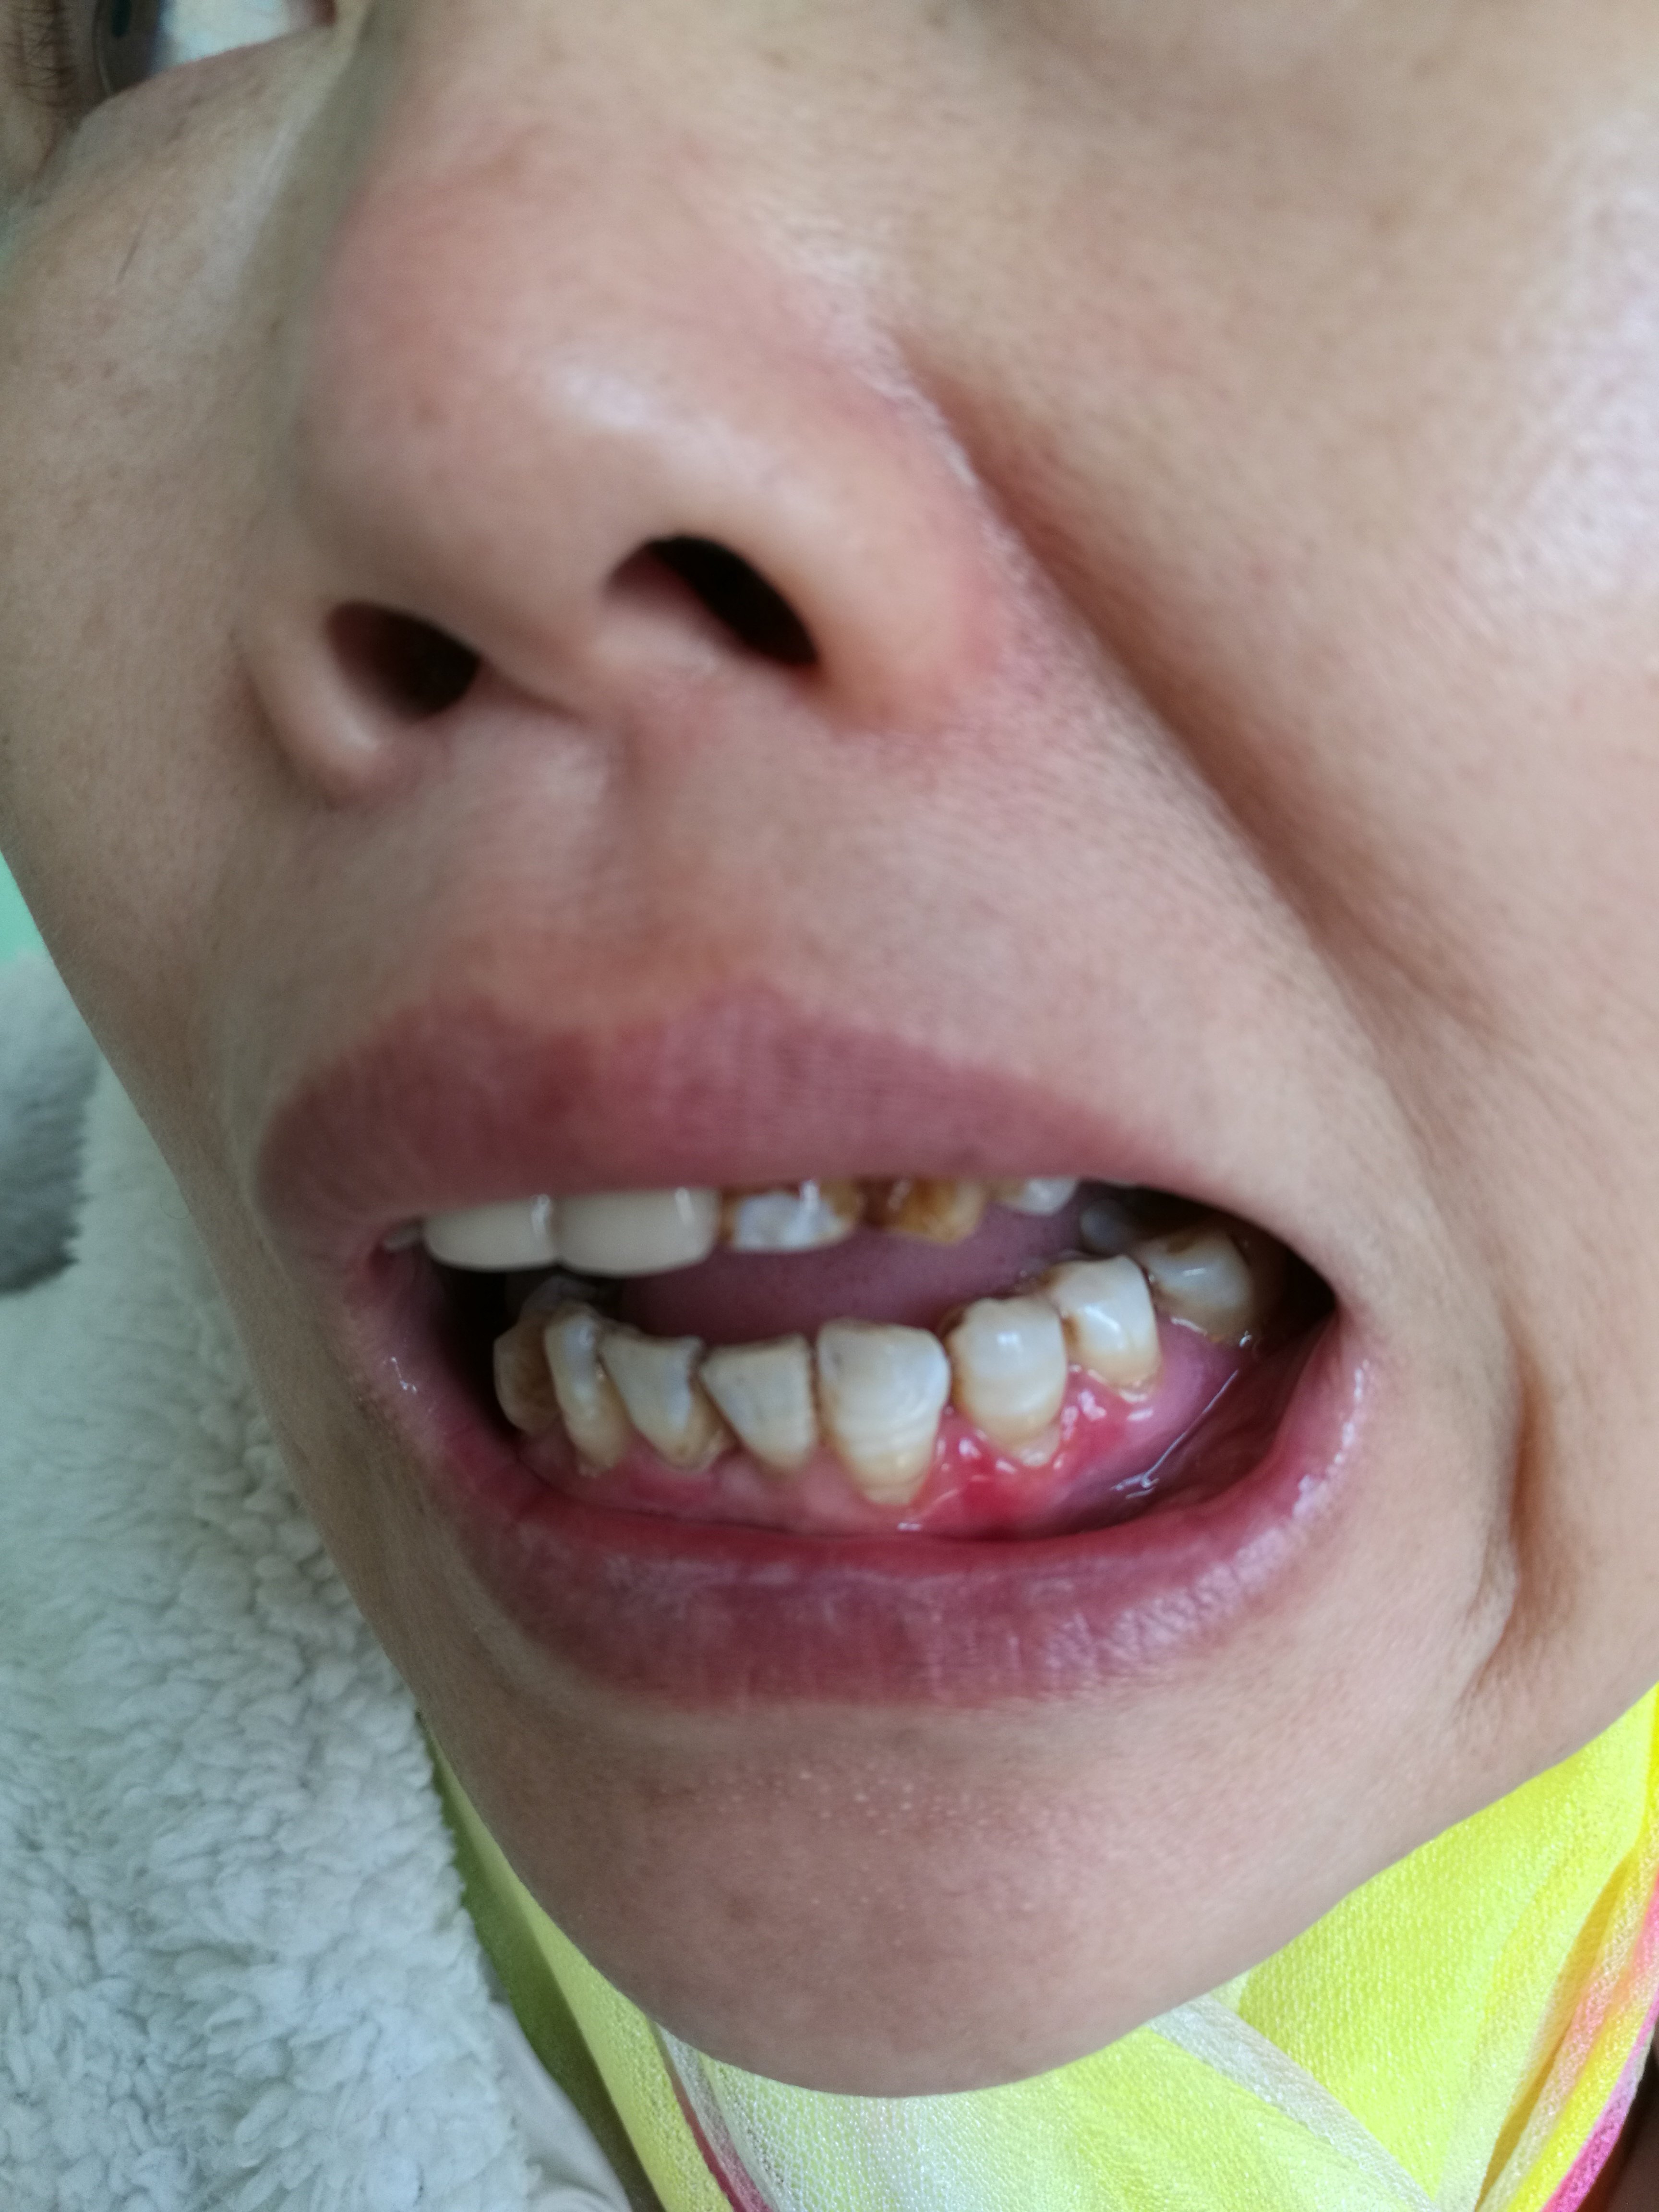 牙龈扁平苔藓症状图片图片